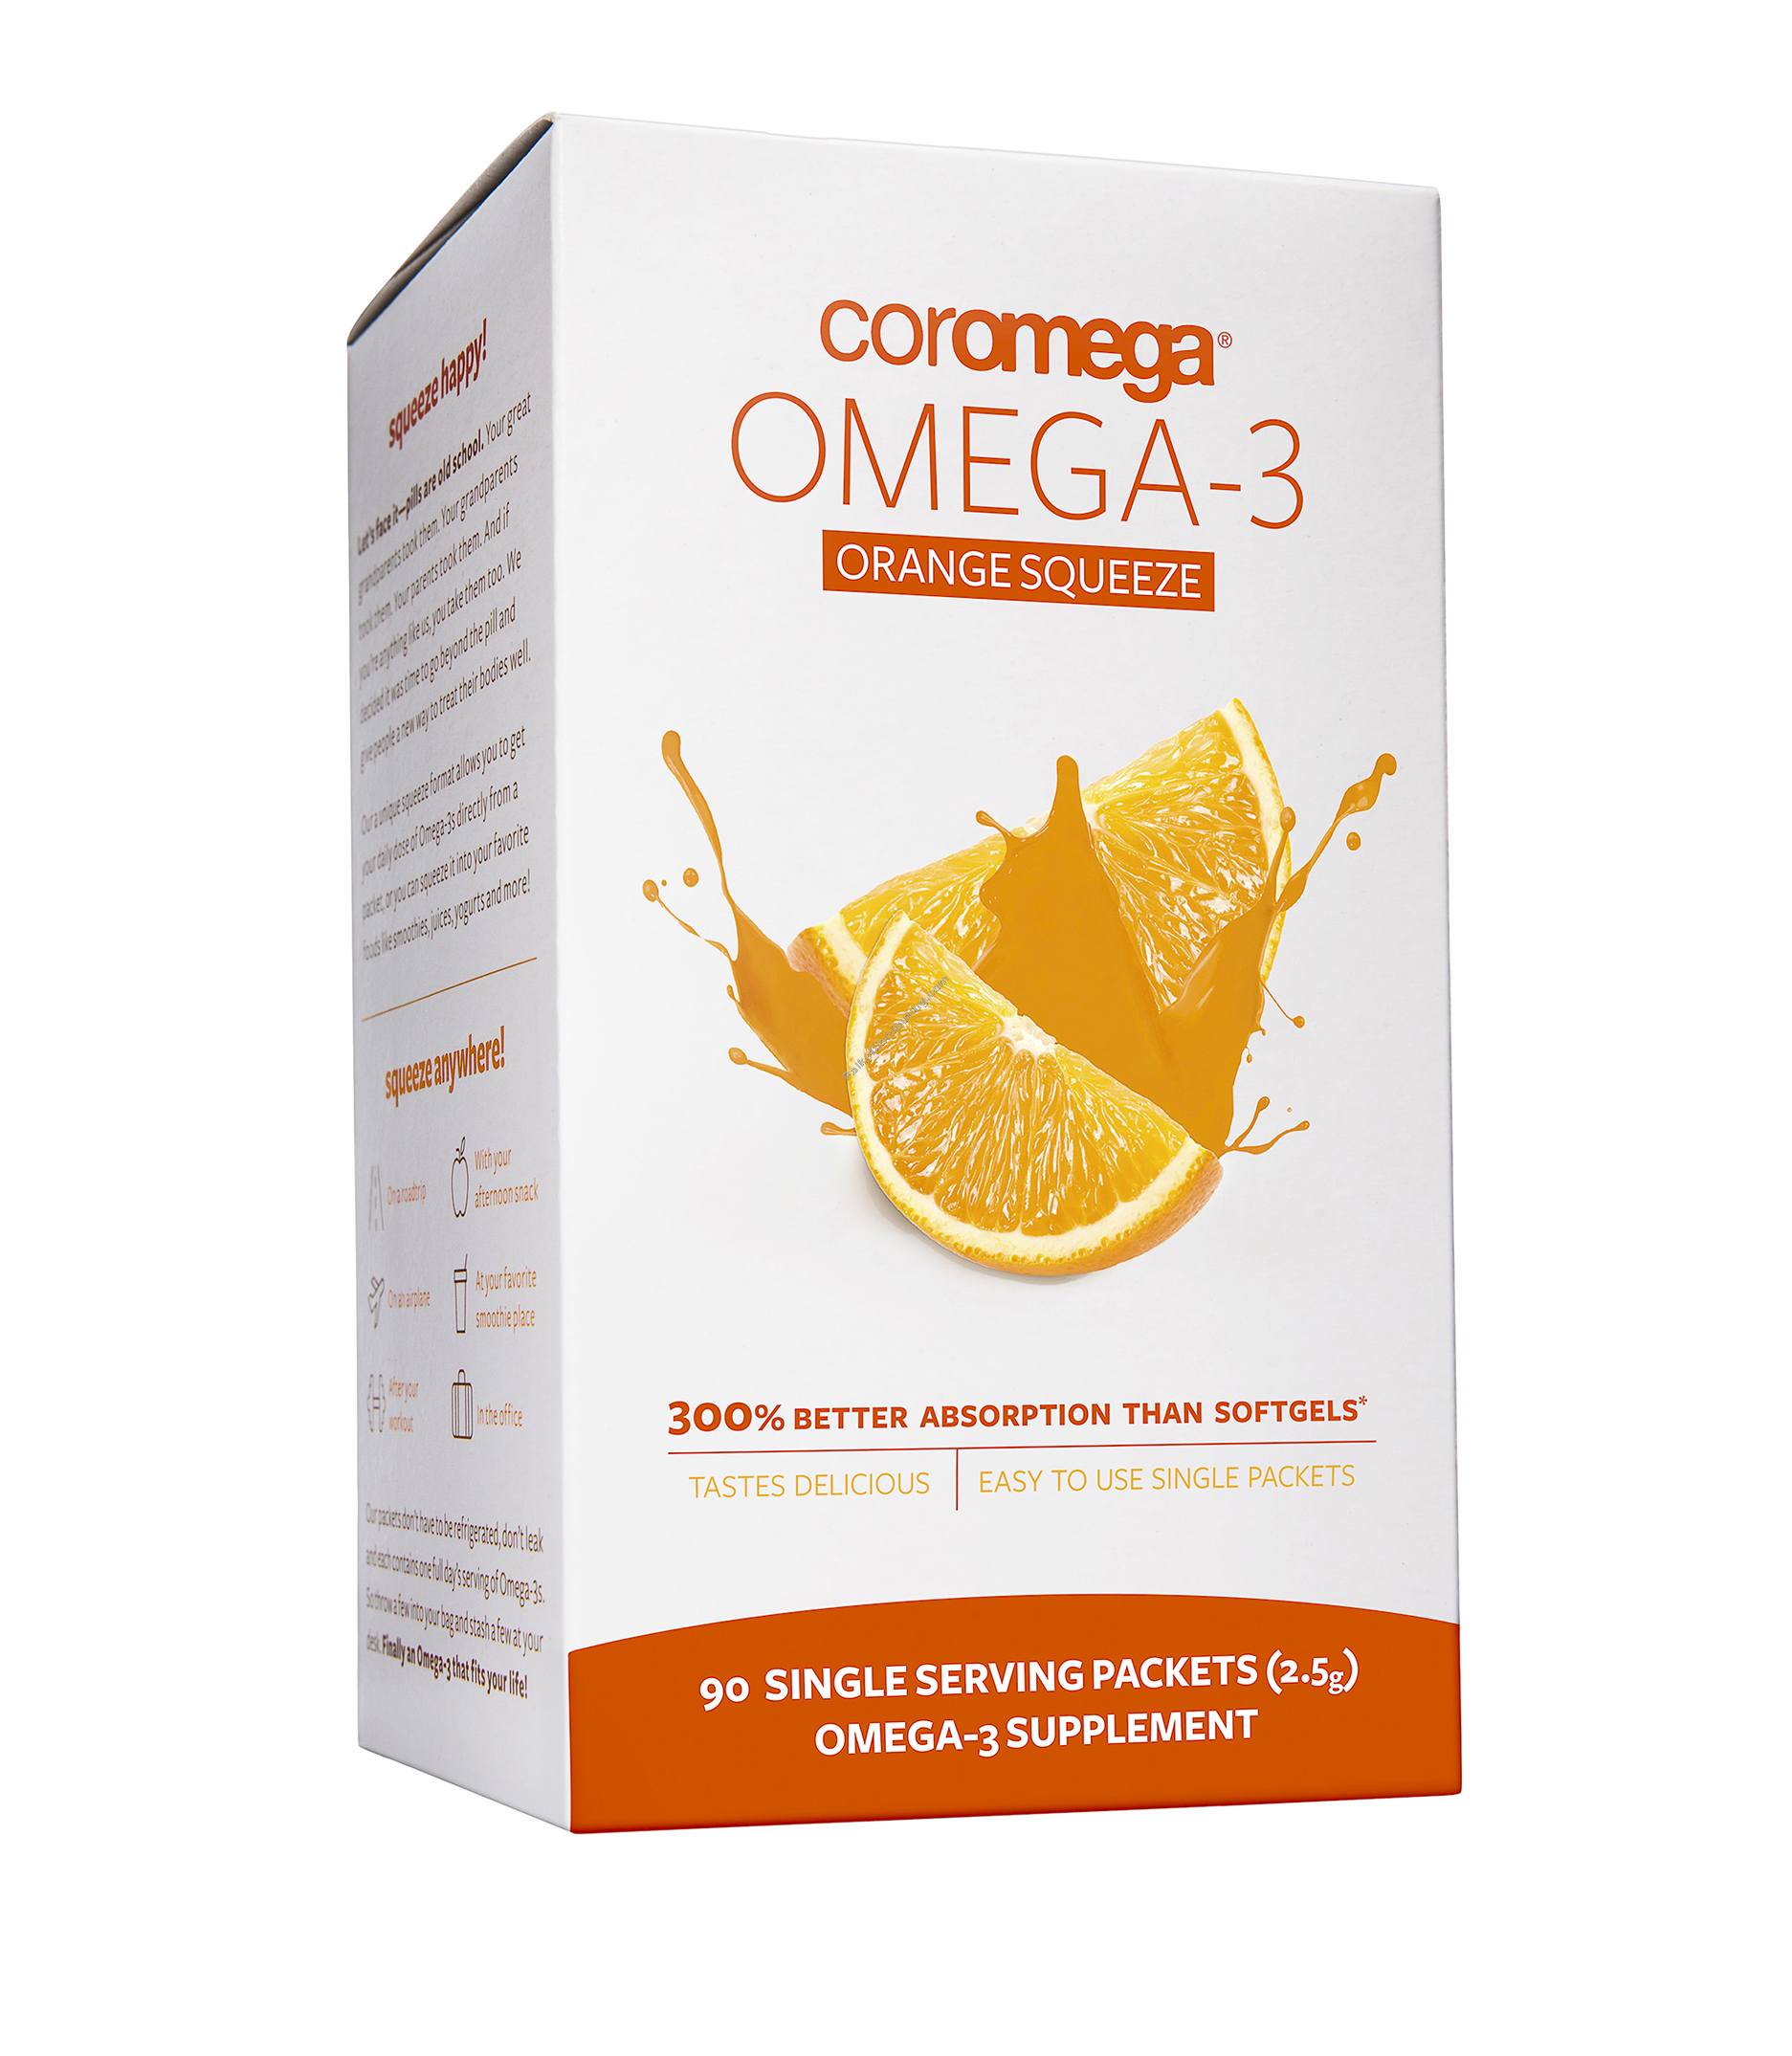 Product Image: Orange Omega 3 Squeeze